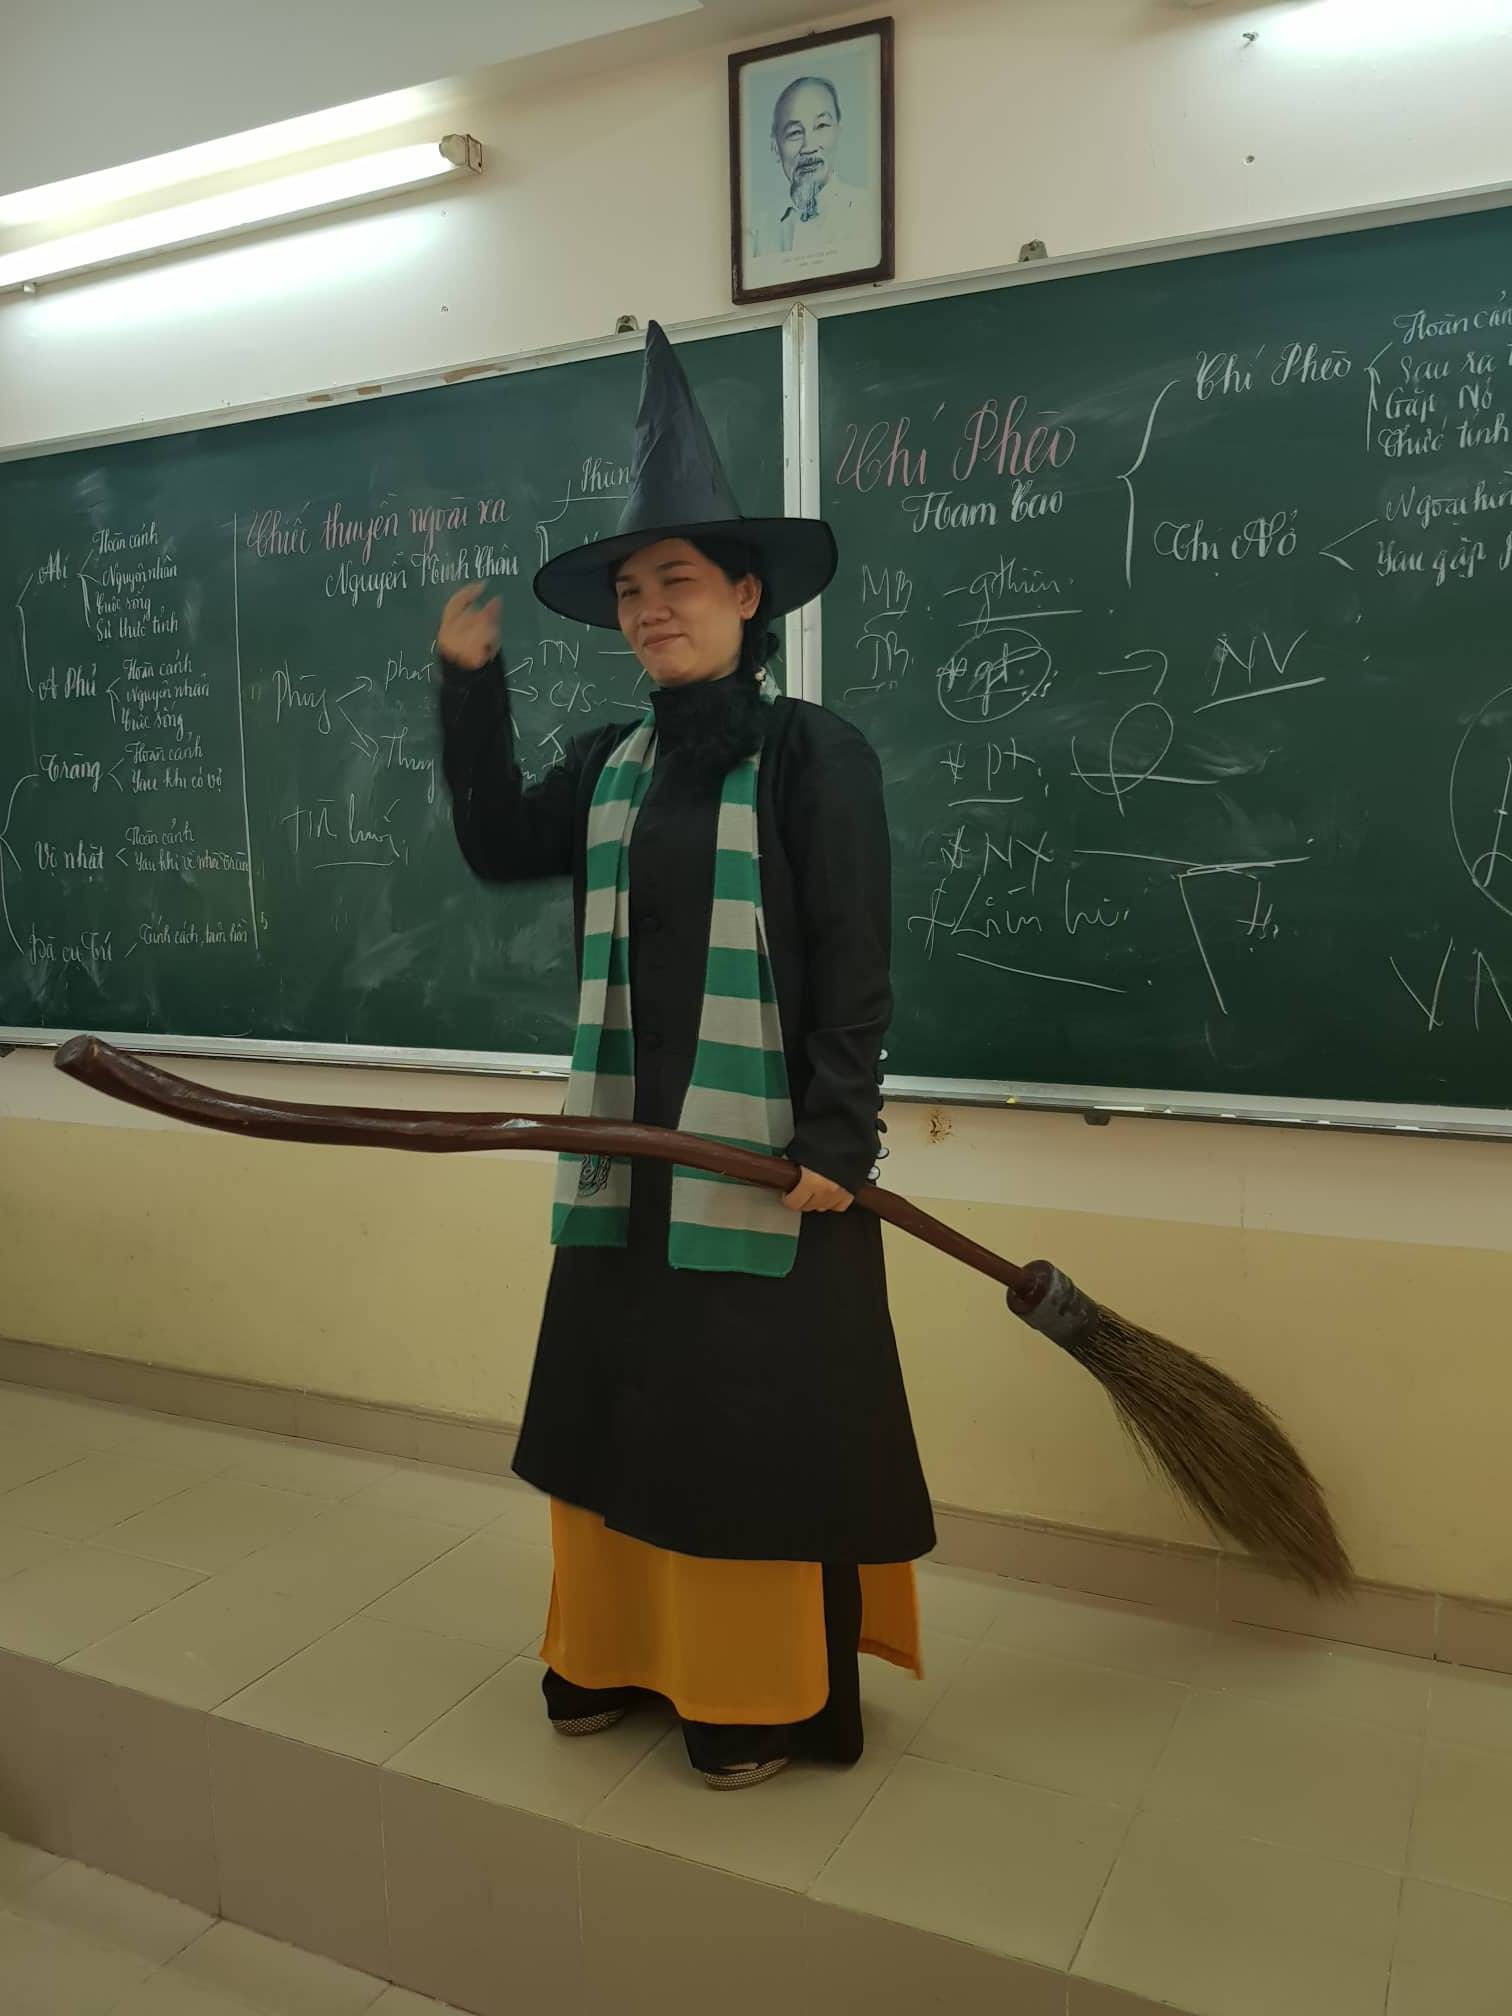 Chuyện cảm động về cô giáo hóa trang thành phù thủy để học sinh có cảm hứng ôn thi đại học môn Văn - Ảnh 2.